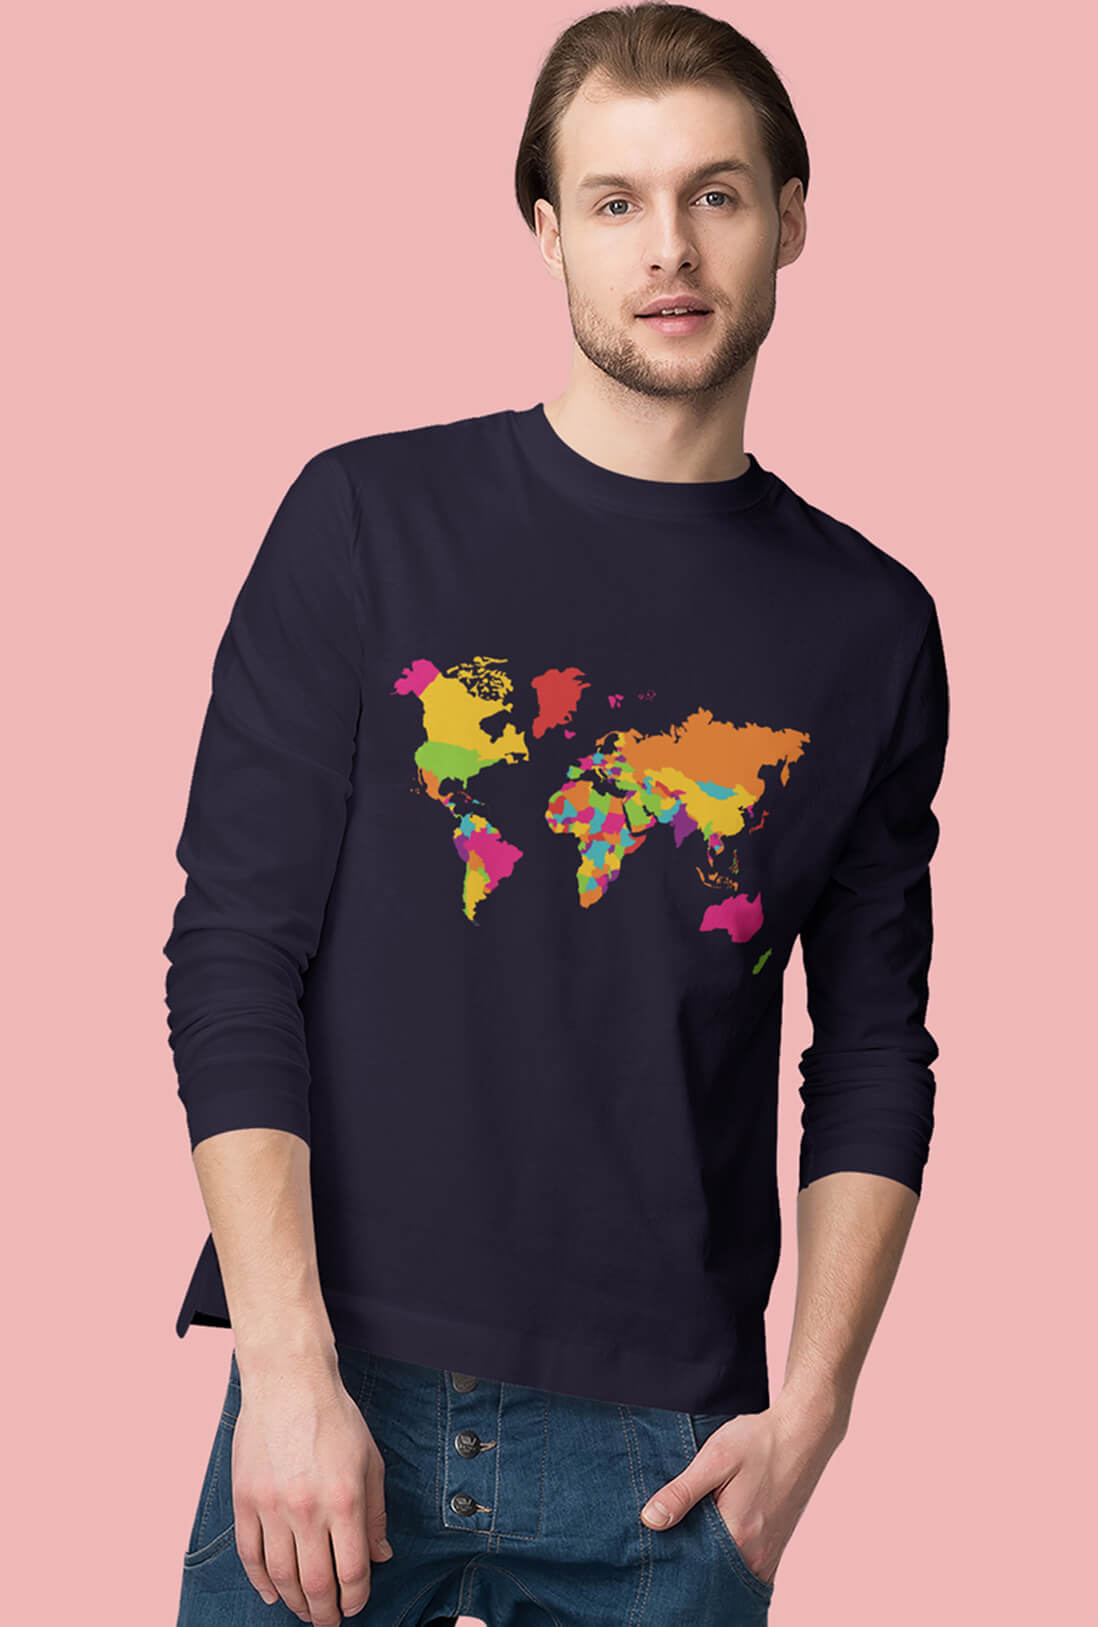 World Atlas Men's Full Sleeve T-Shirt